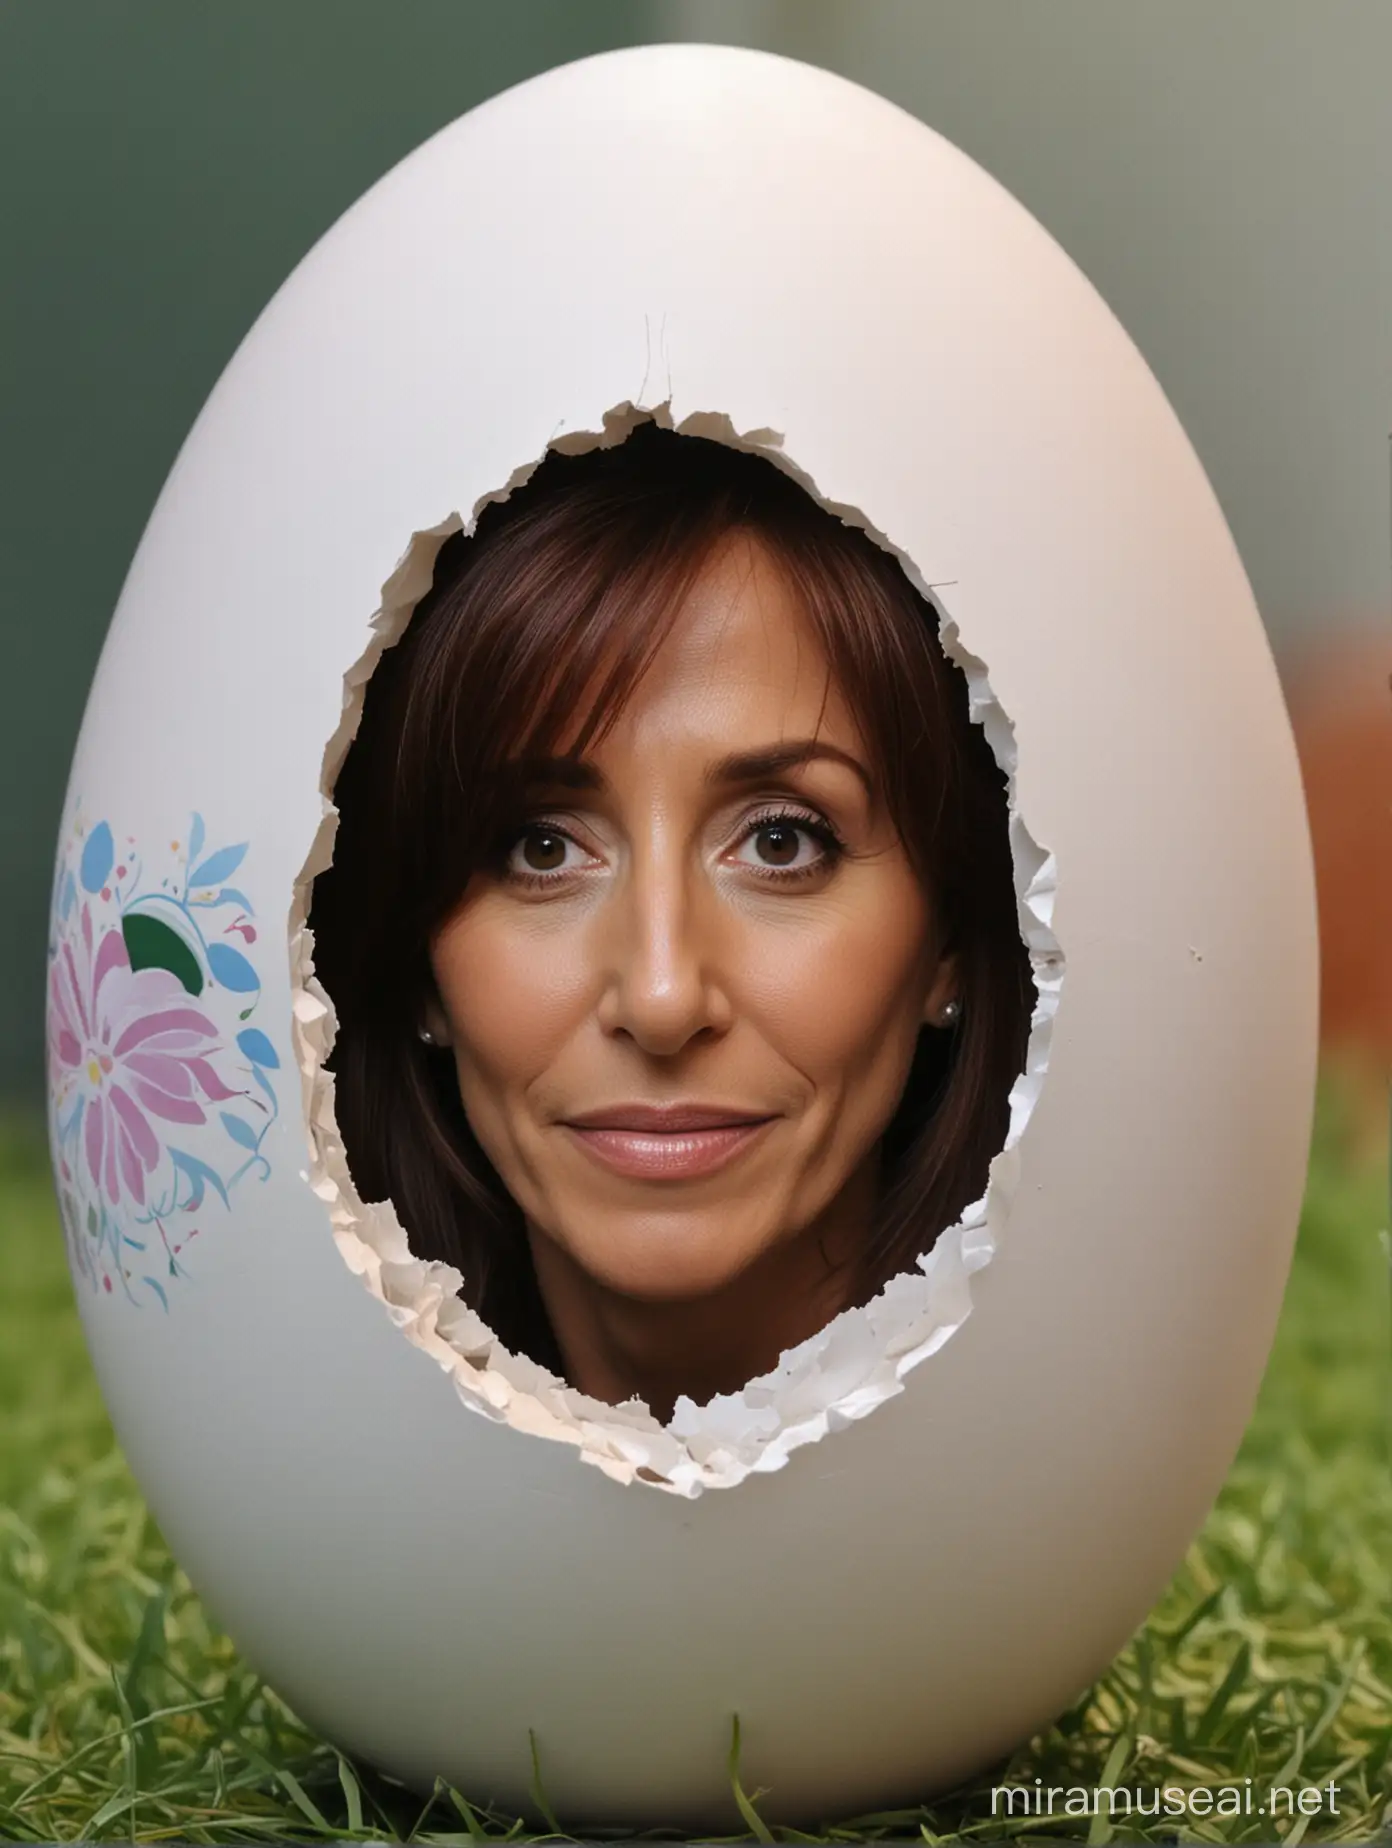 Cristina Fernandez de Kirchner Emerging from Easter Egg